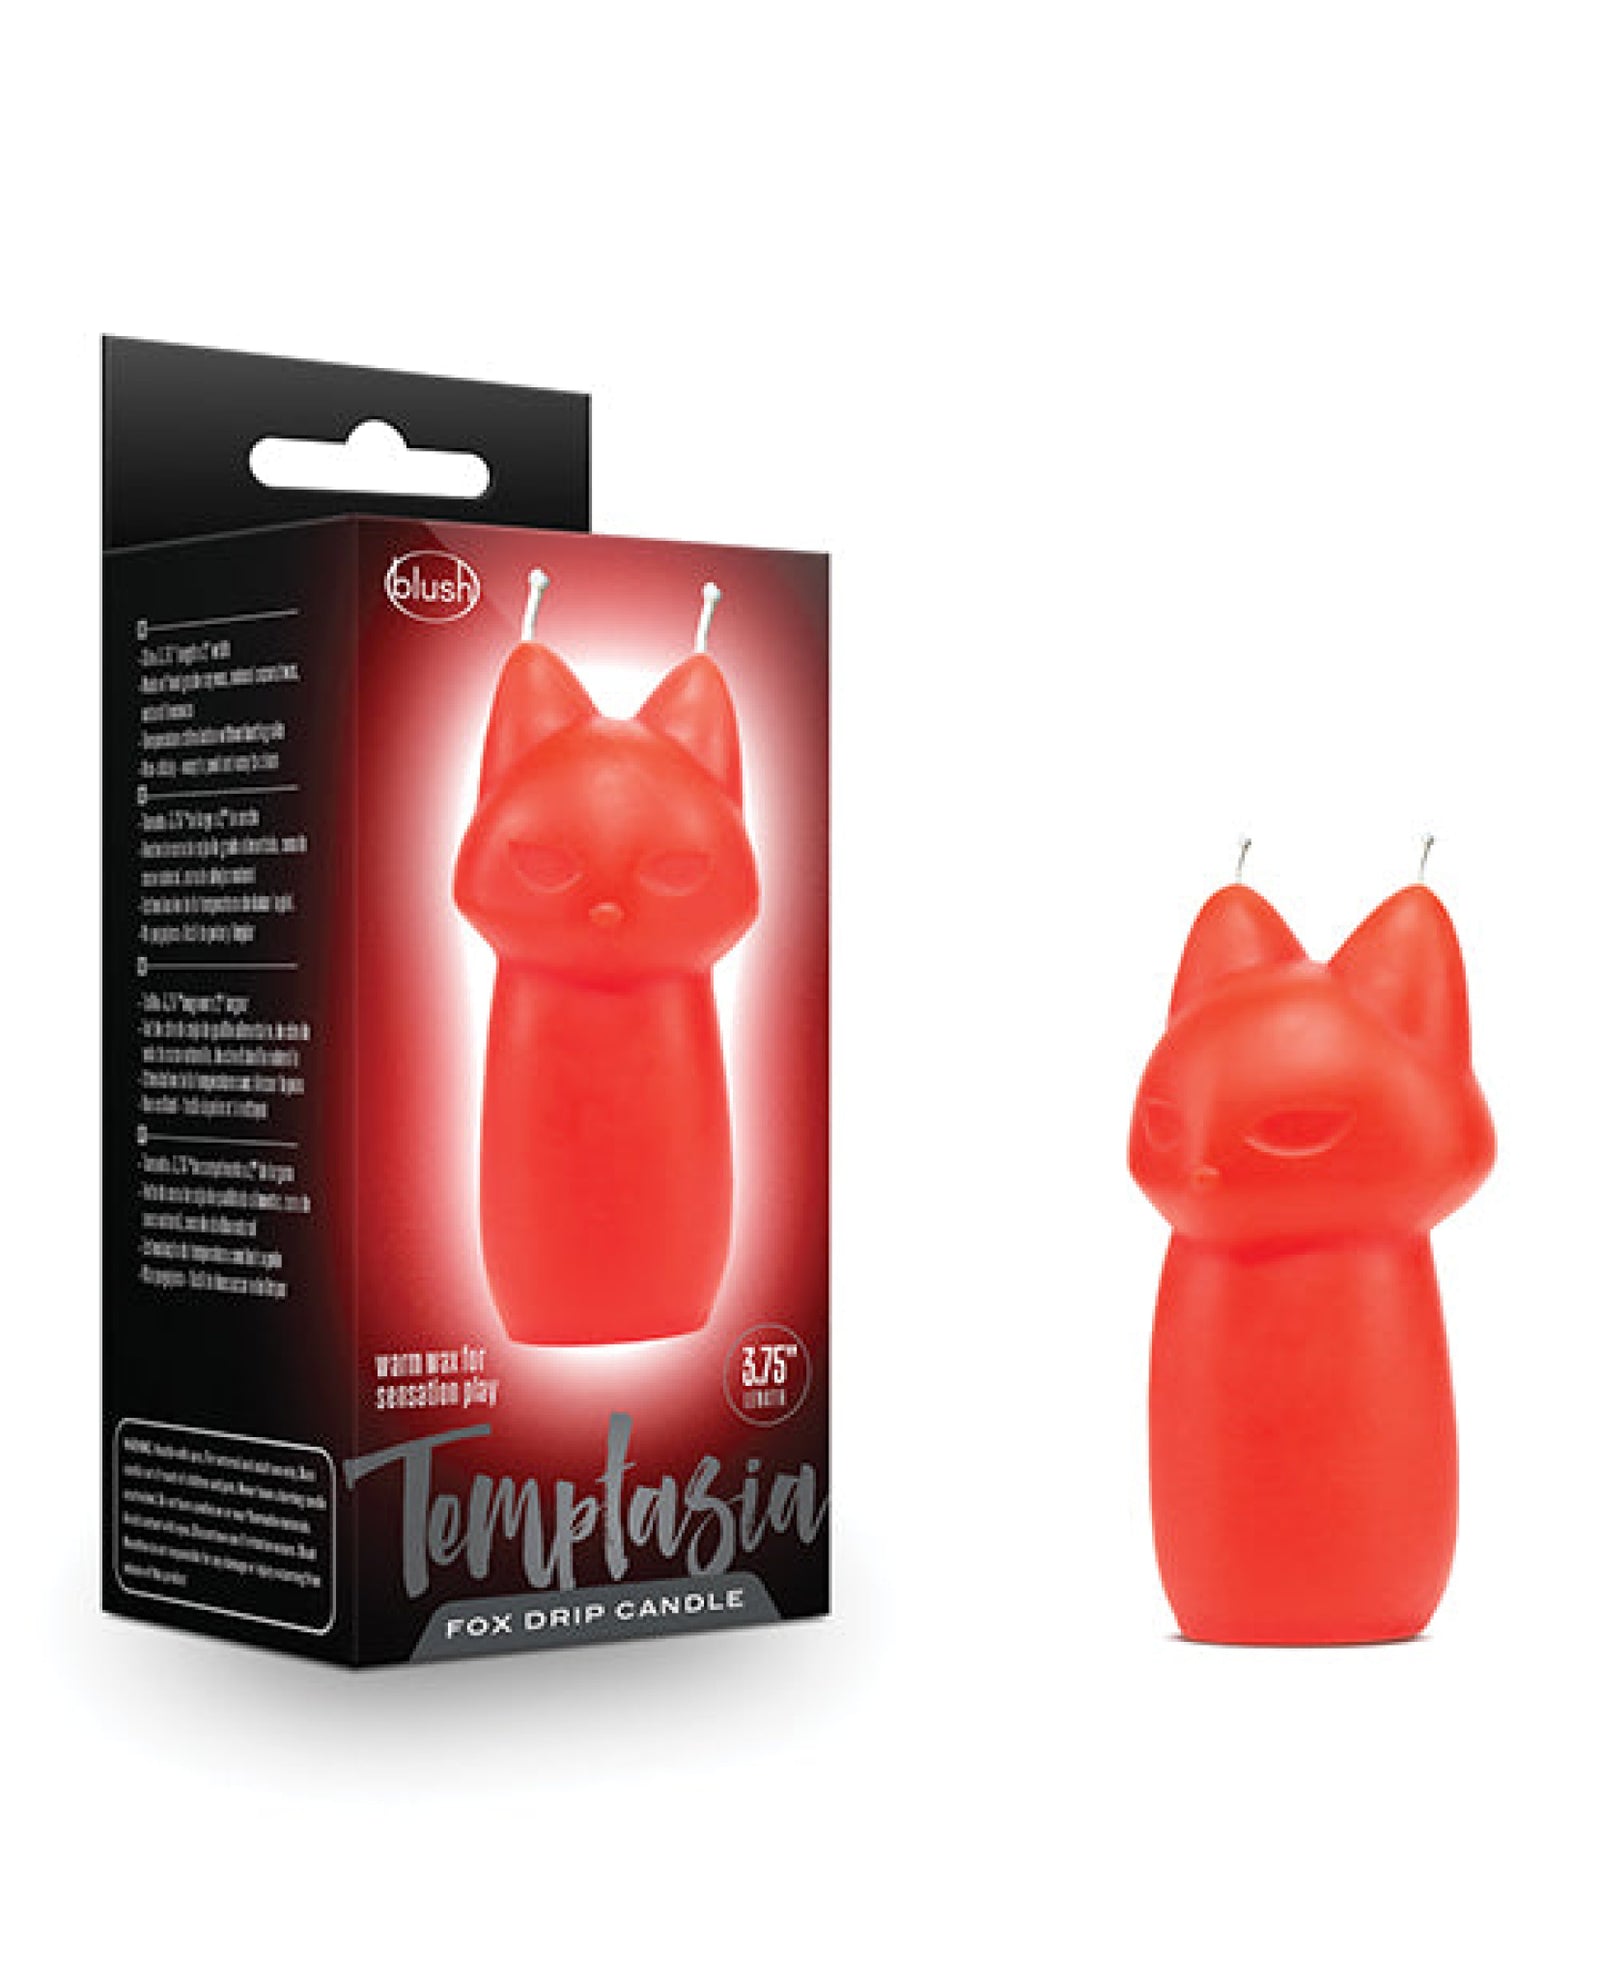 Blush Temptasia Fox Drip Candle - Red Blush